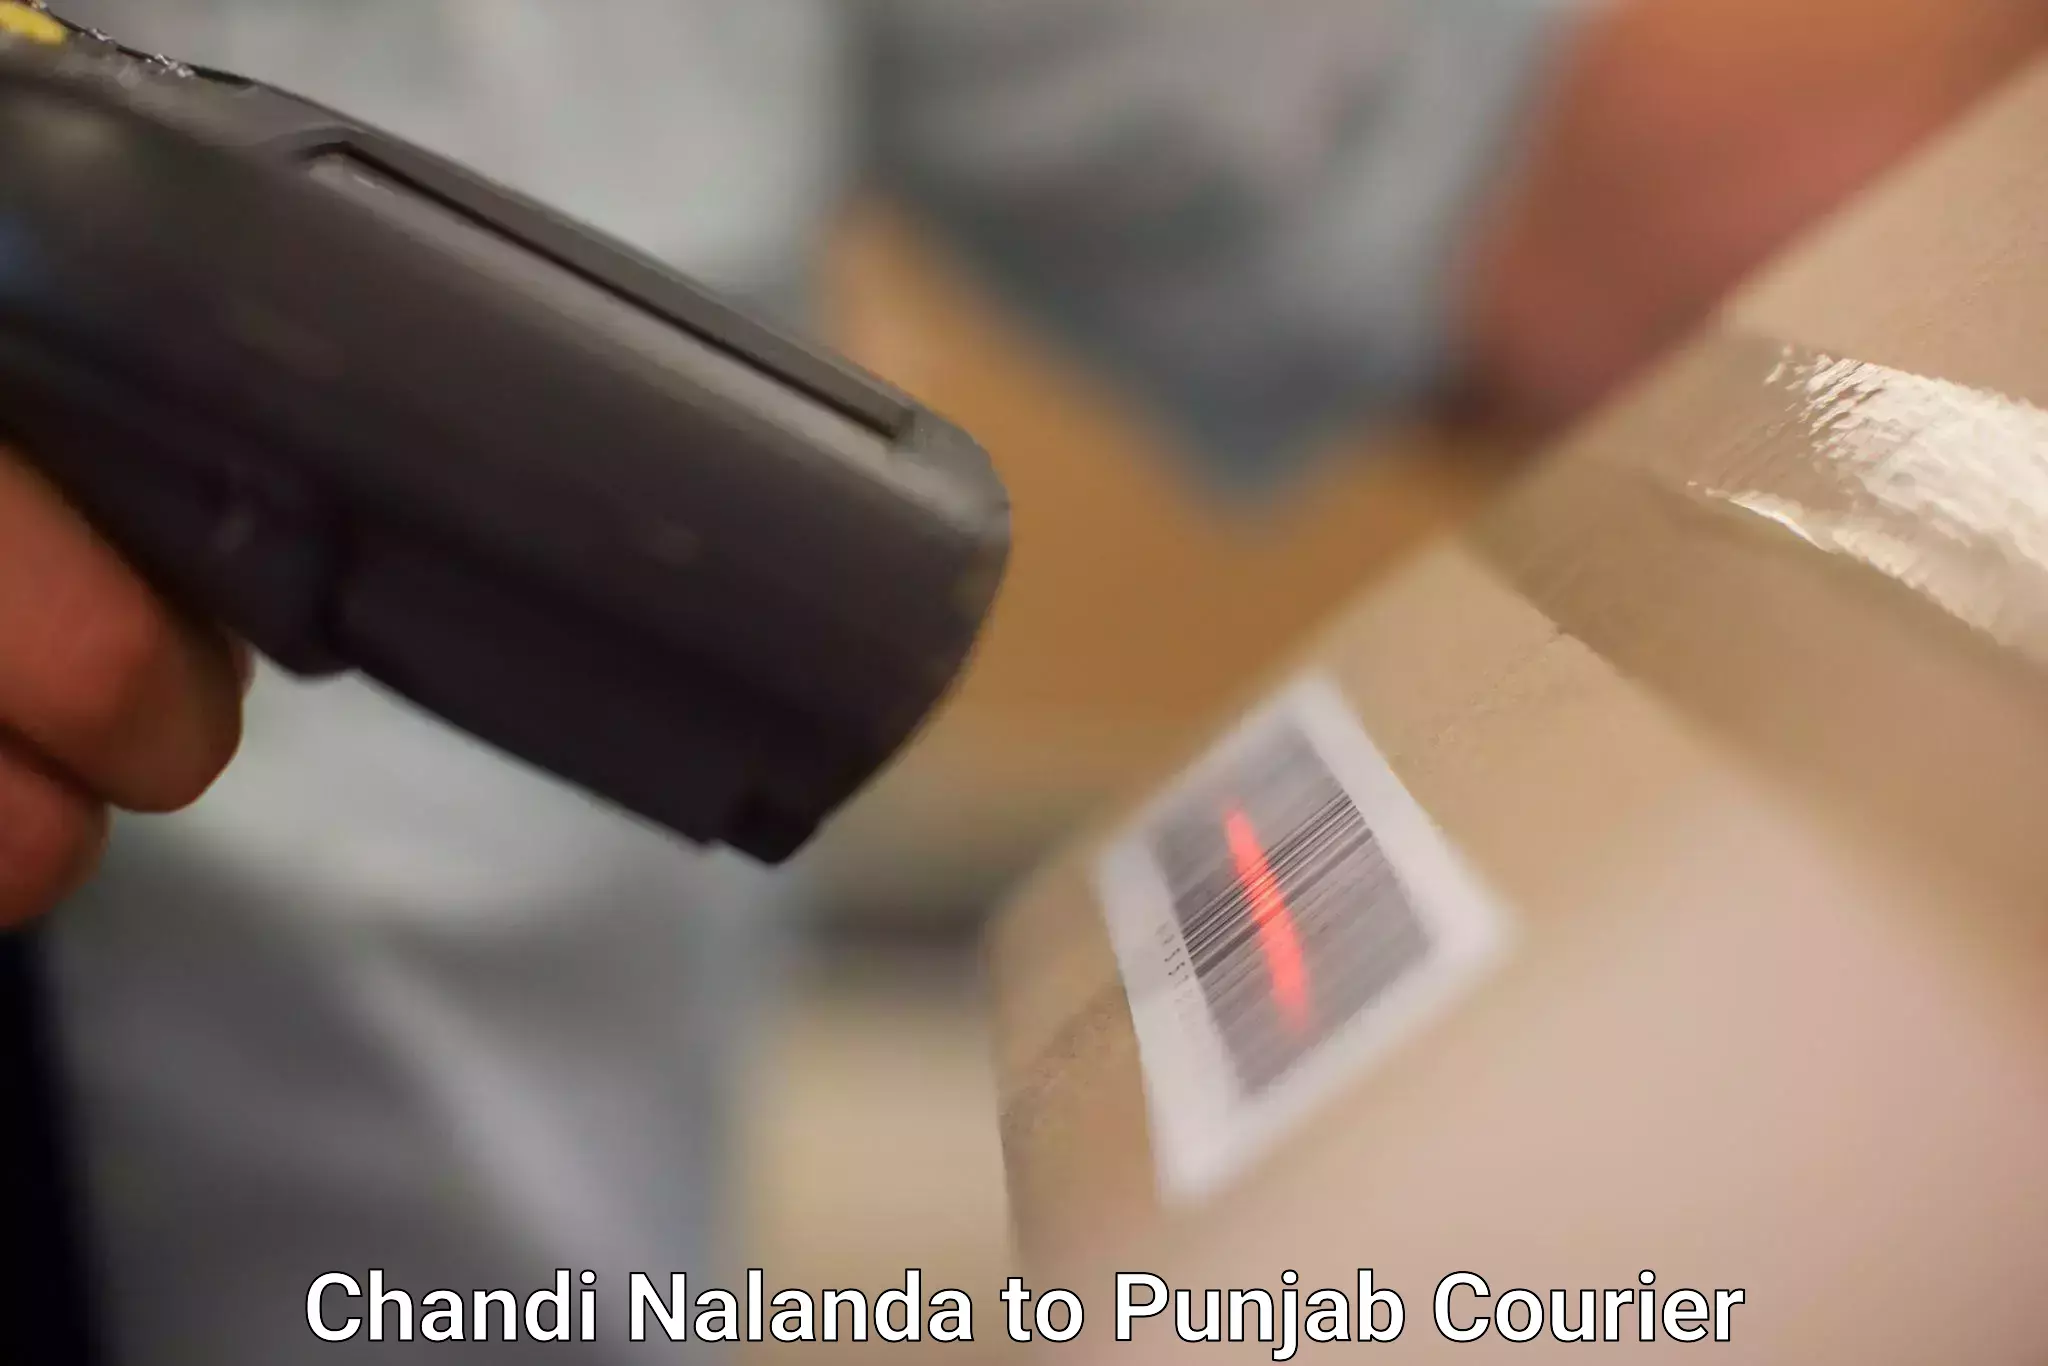 Express delivery capabilities Chandi Nalanda to Samana